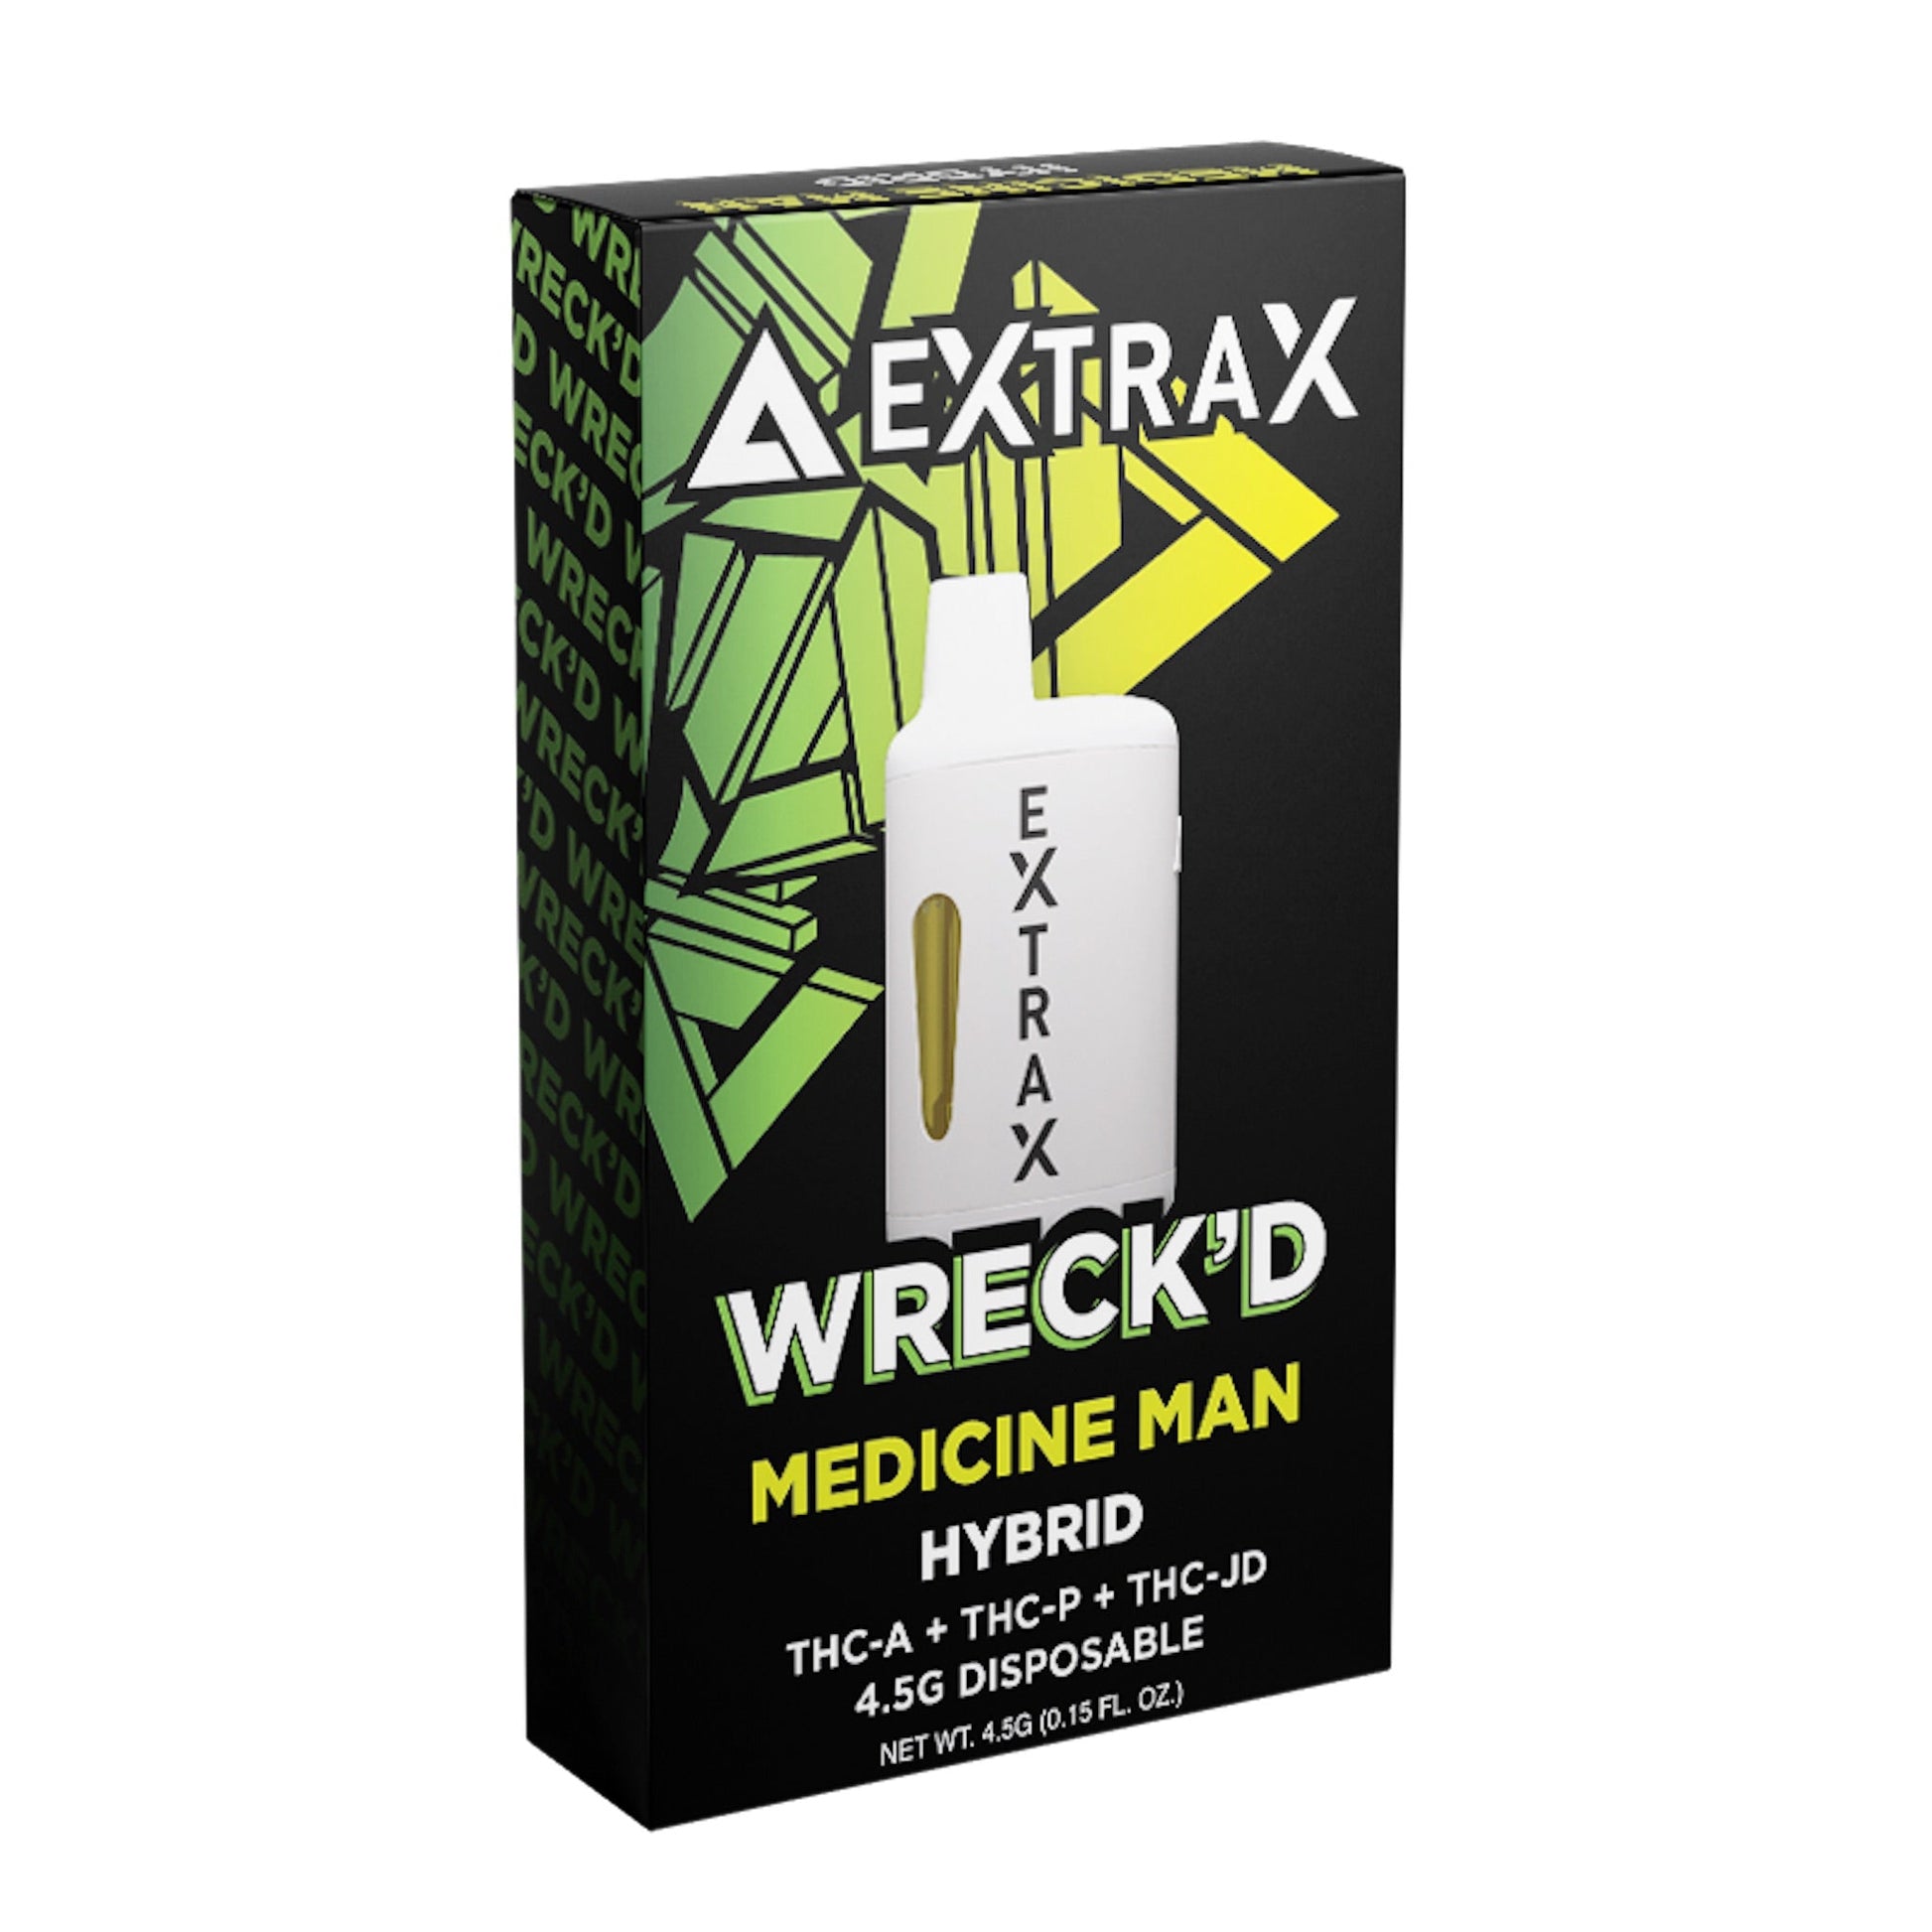 Extrax Wreckd THC-A + THC-P Vaporizer - 4500mg Medicine Man